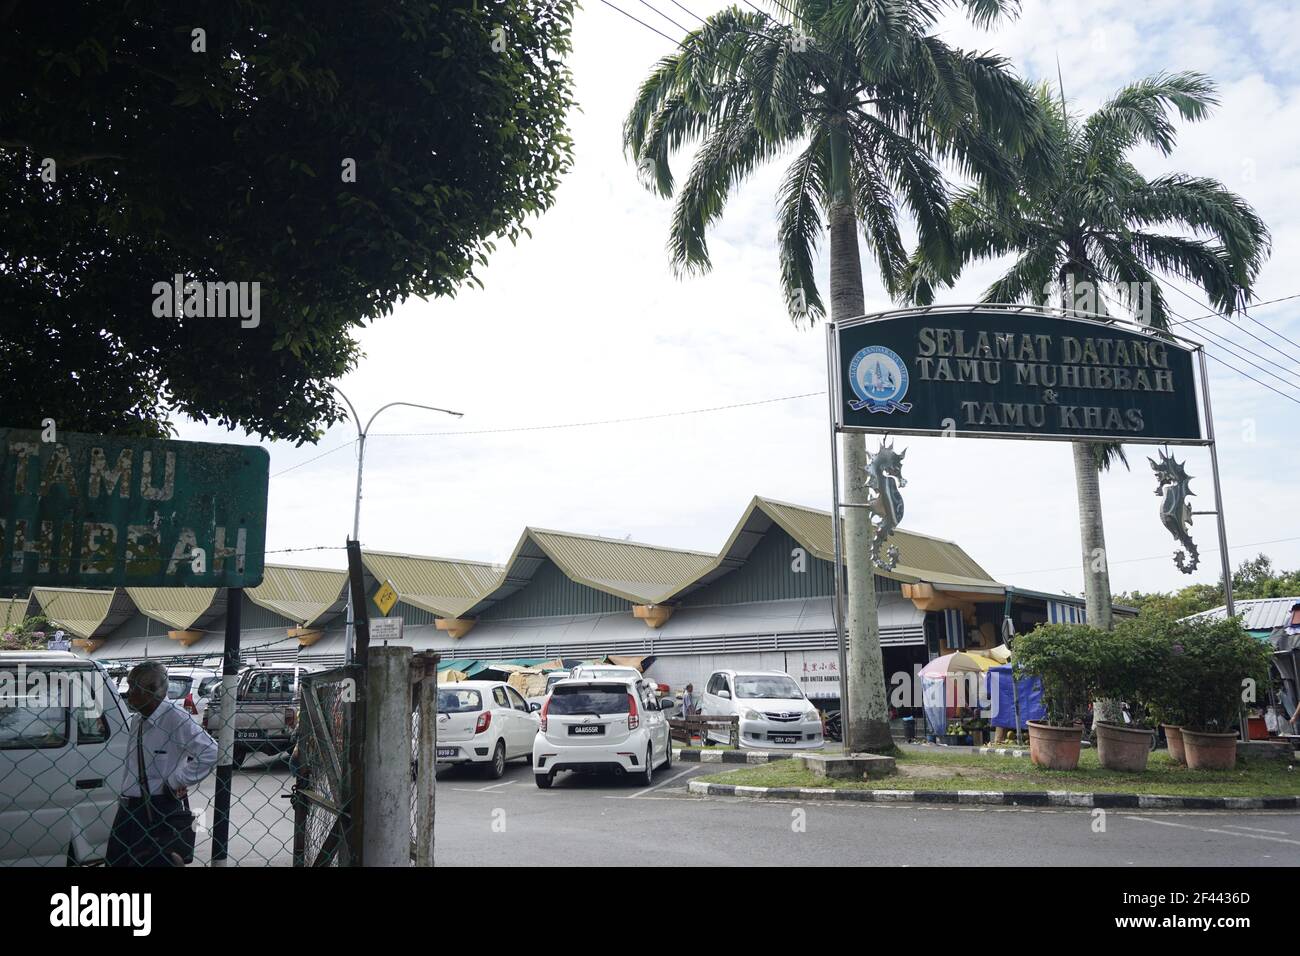 Tamu Muhibbah and Tamu Khas markets in Miri, Sarawak Stock Photo